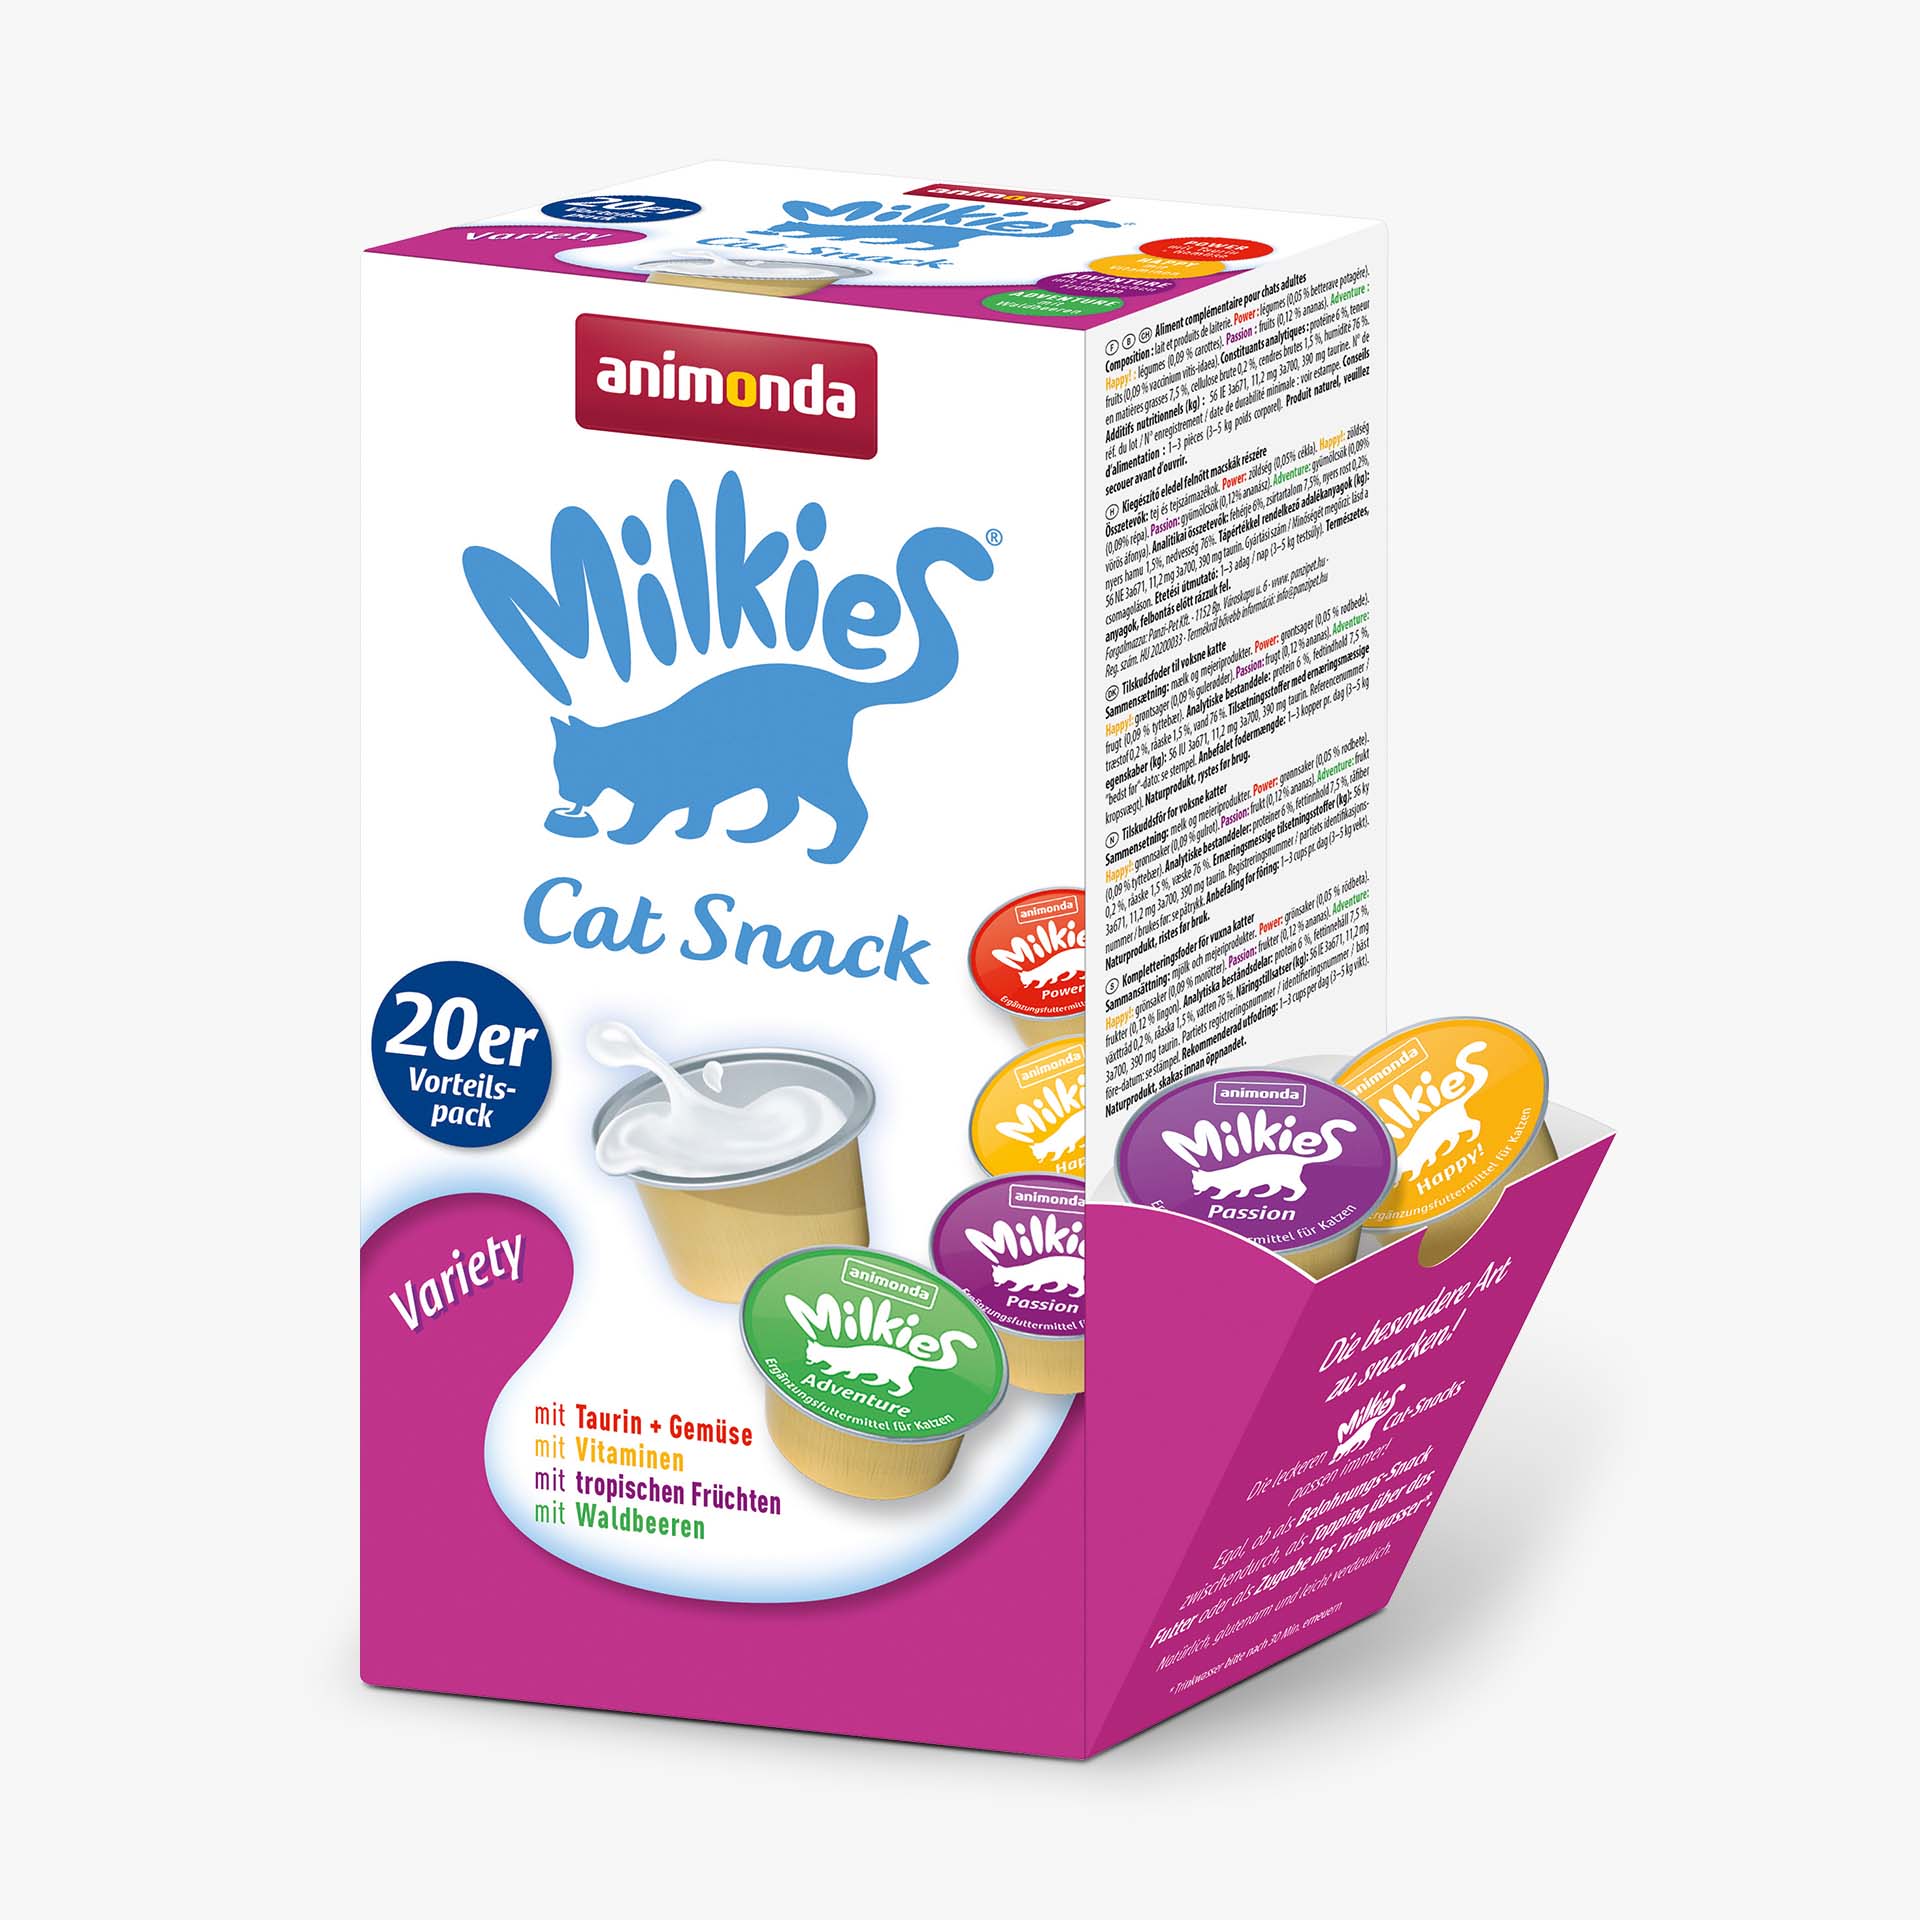 Milkies Variety - value pack of 20 